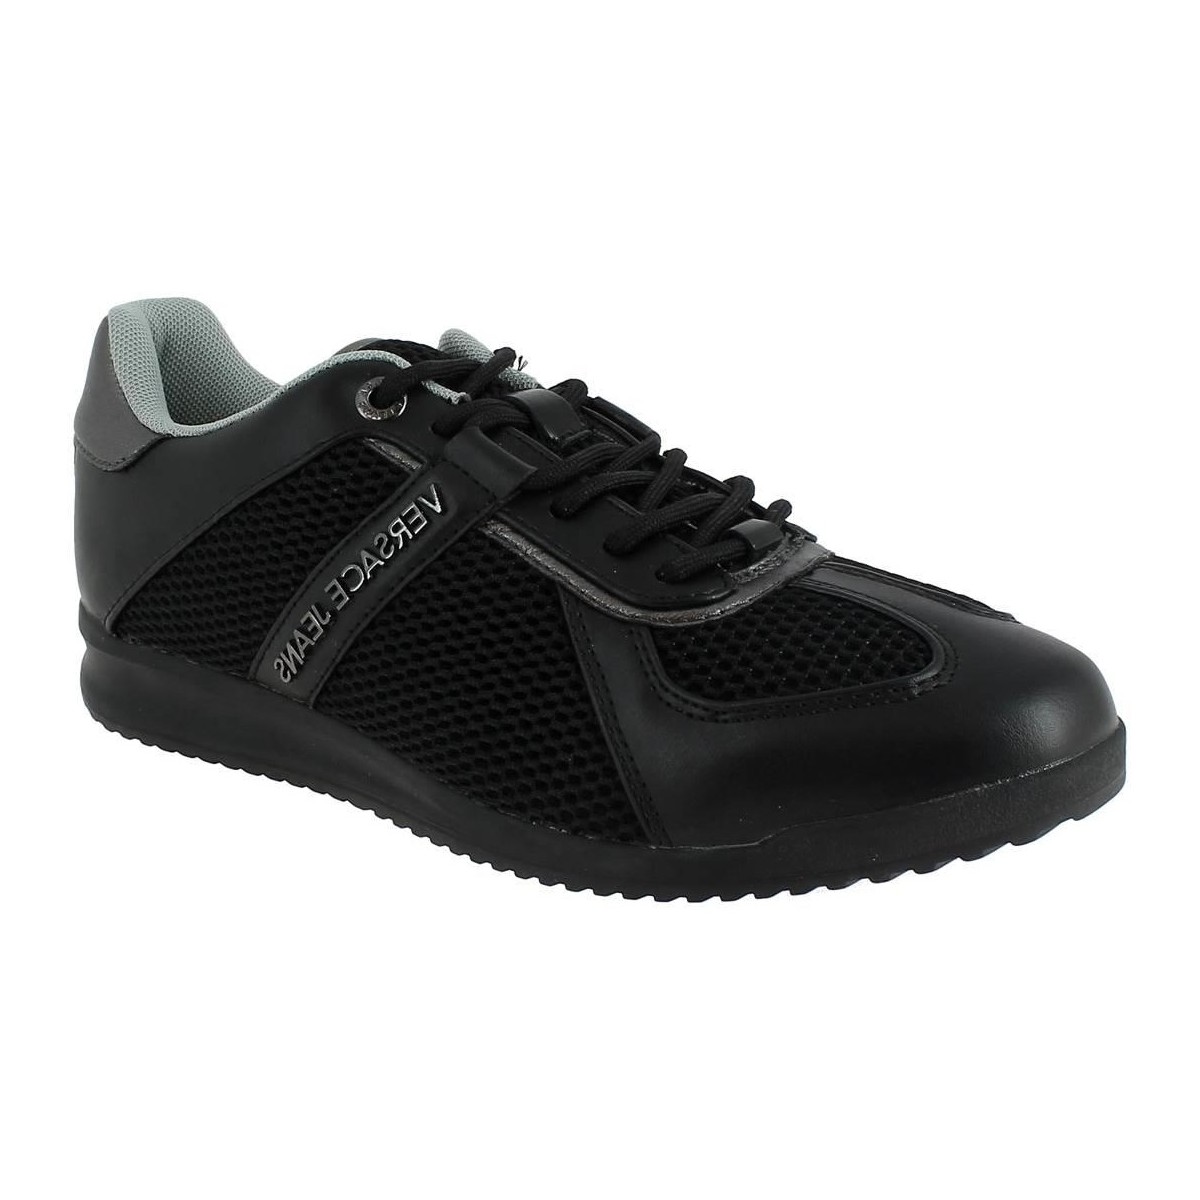 Chaussures Homme Baskets mode Versace E0YPBSB2 Noir